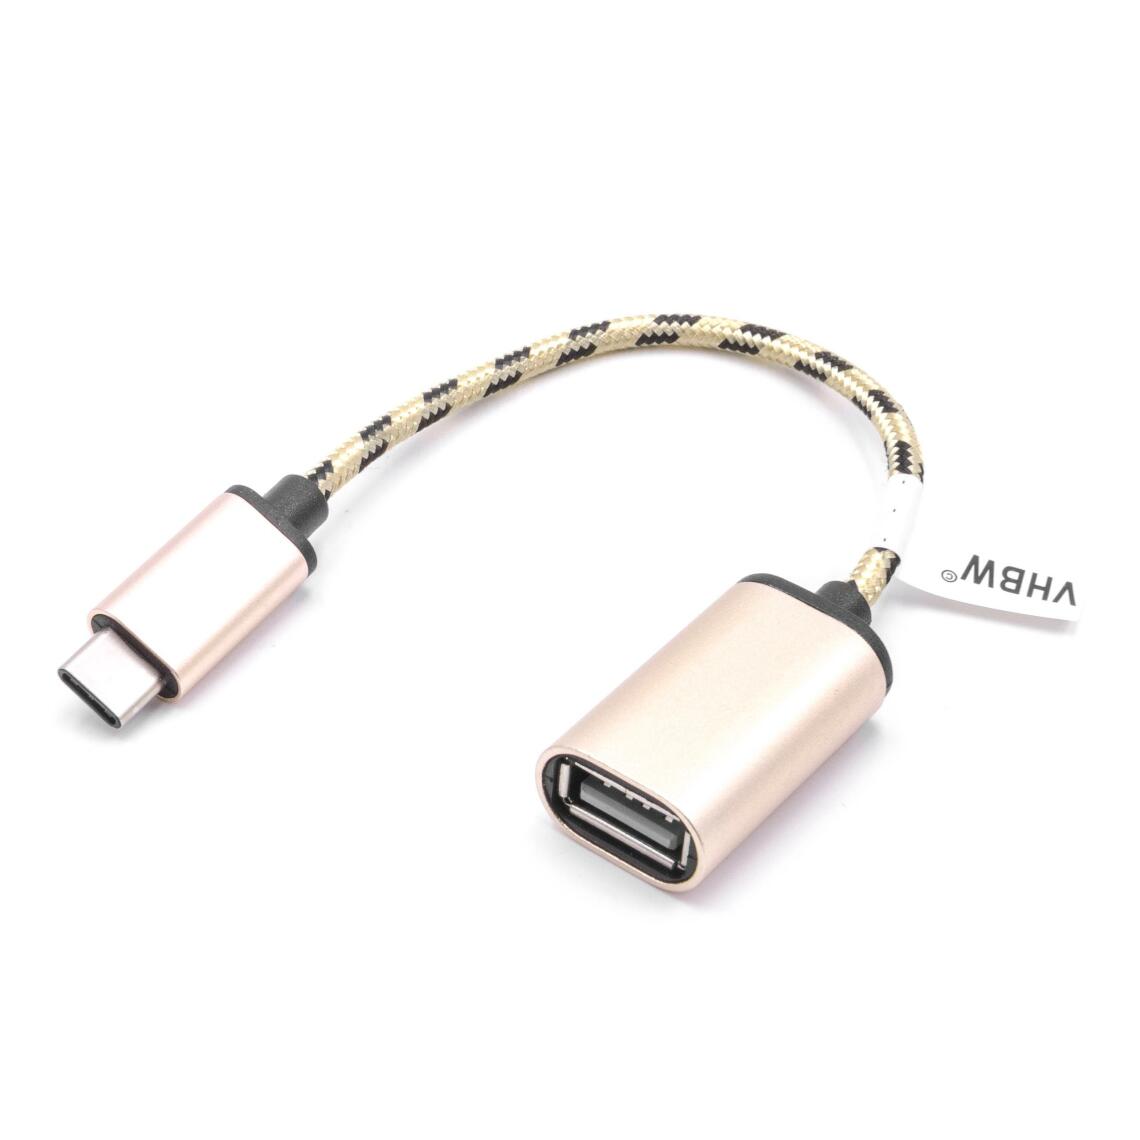 Vhbw - vhbw câble adaptateur USB type C sur USB 2.0 pour Sony Xperia L1, L2, XA, XA1, XA2, XZ, XZ1, XZs - Accessoires alimentation